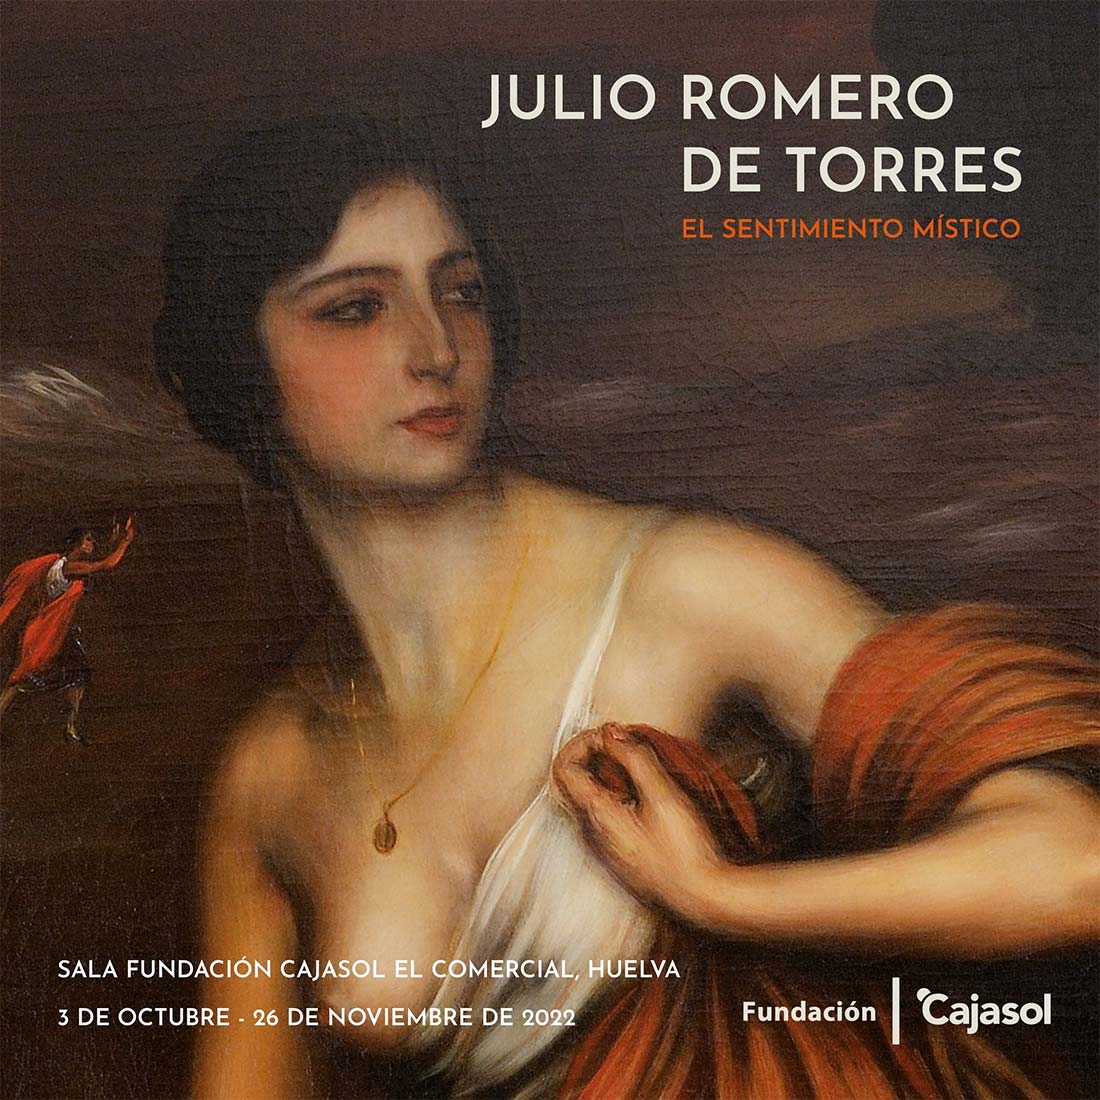 Exposicion Julio Romero de Torres en Huelva Fundacion Cajasol del 3 de octubre al 26 de noviembre 2022